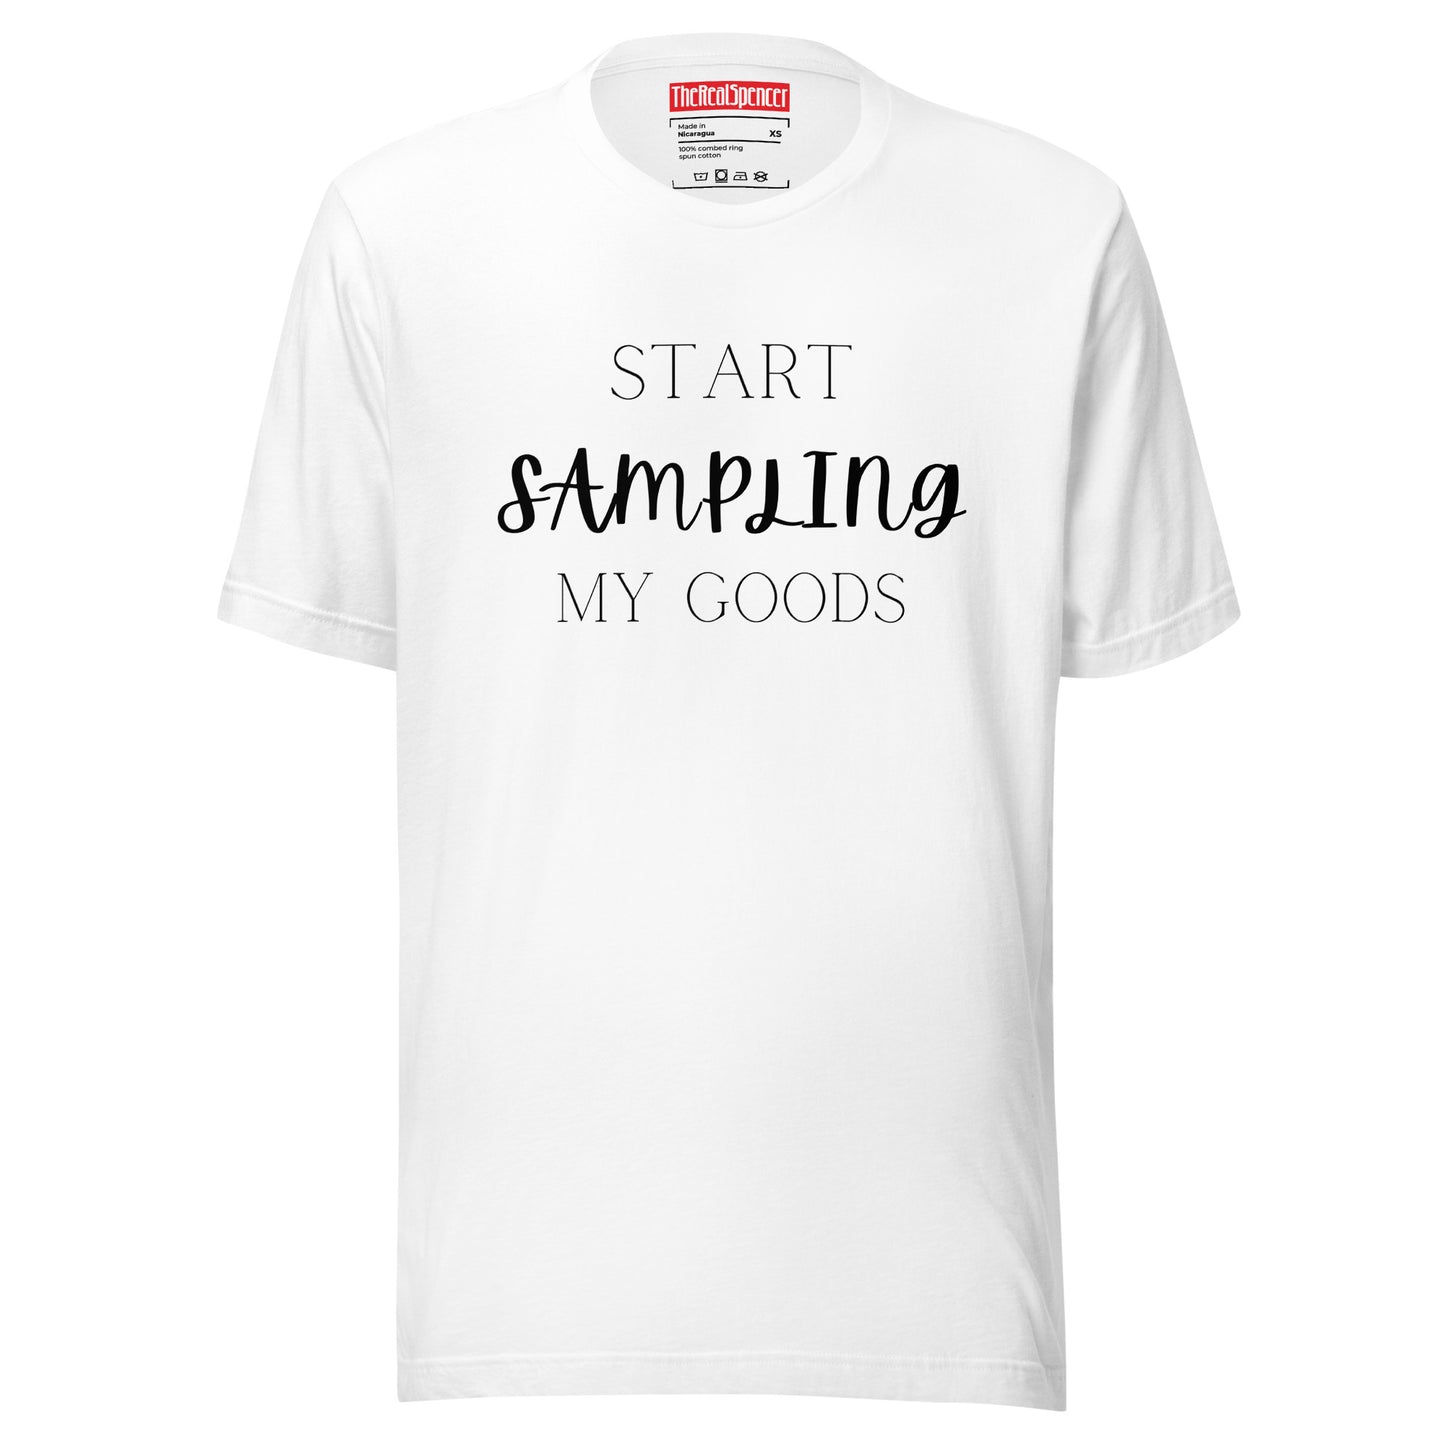 Start Sampling My Goods T-Shirt